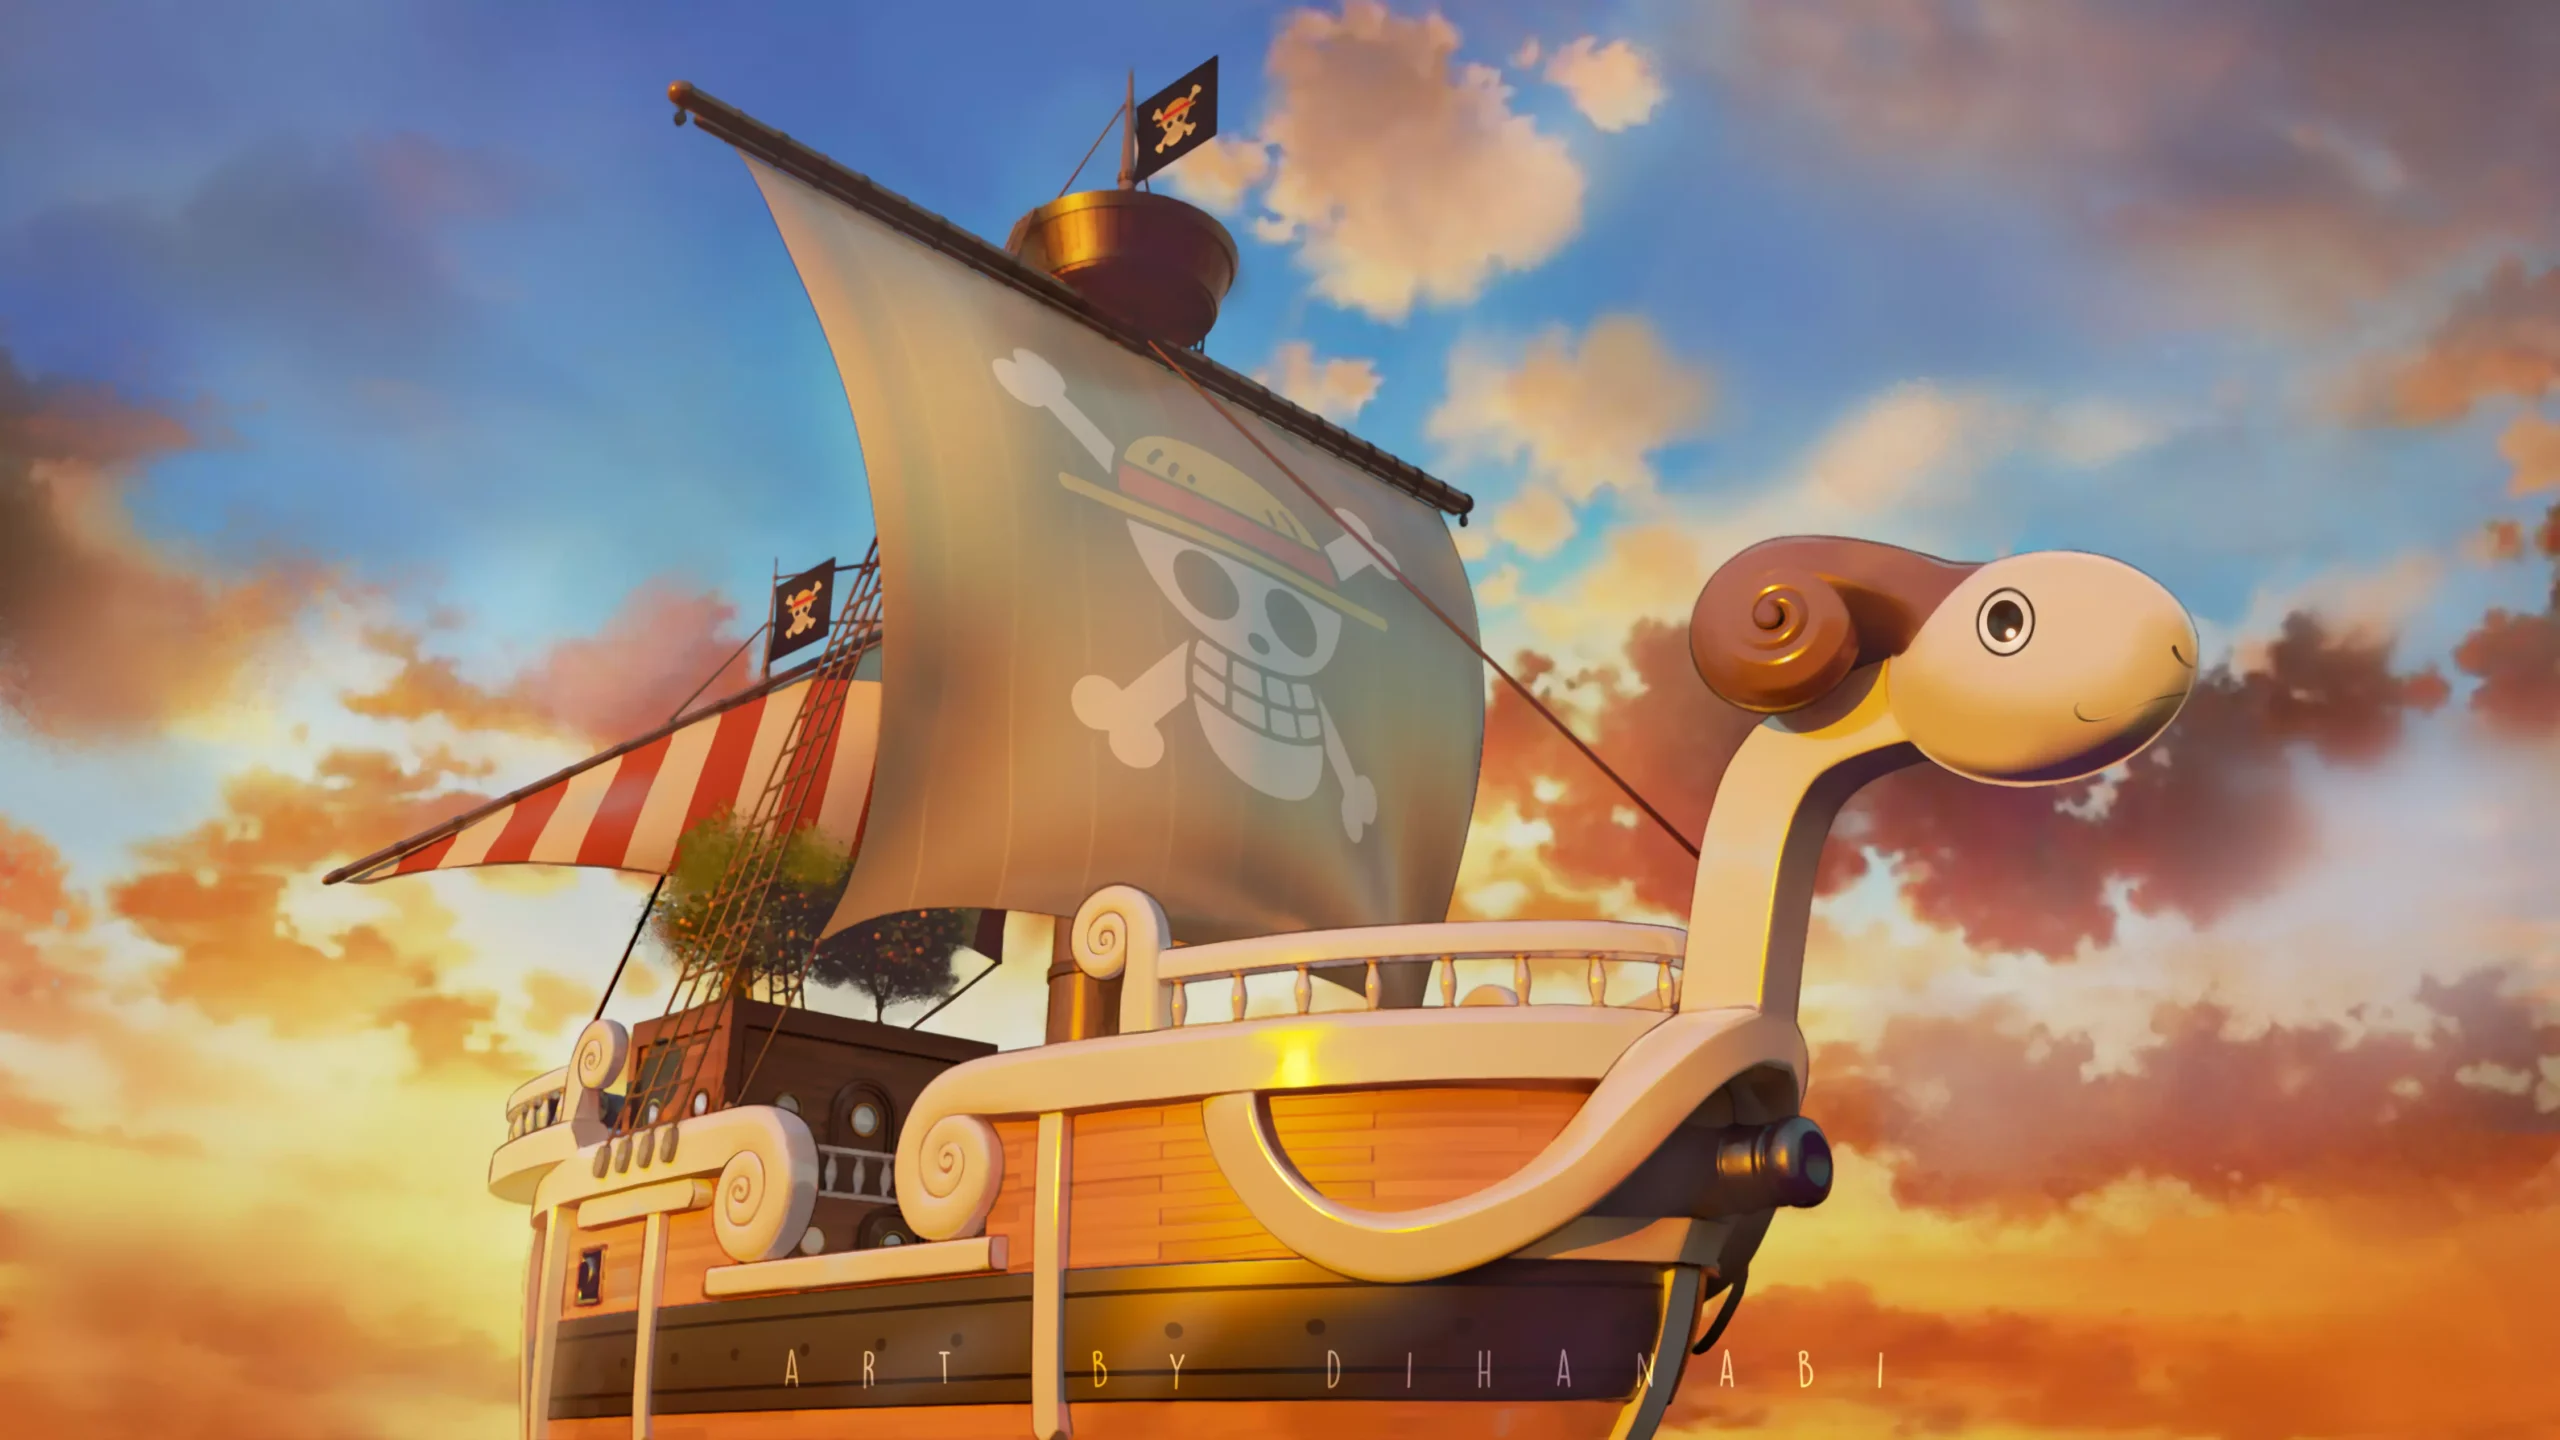 Going Merry, o navio de One Piece, chega a Copacabana - Molines Studios